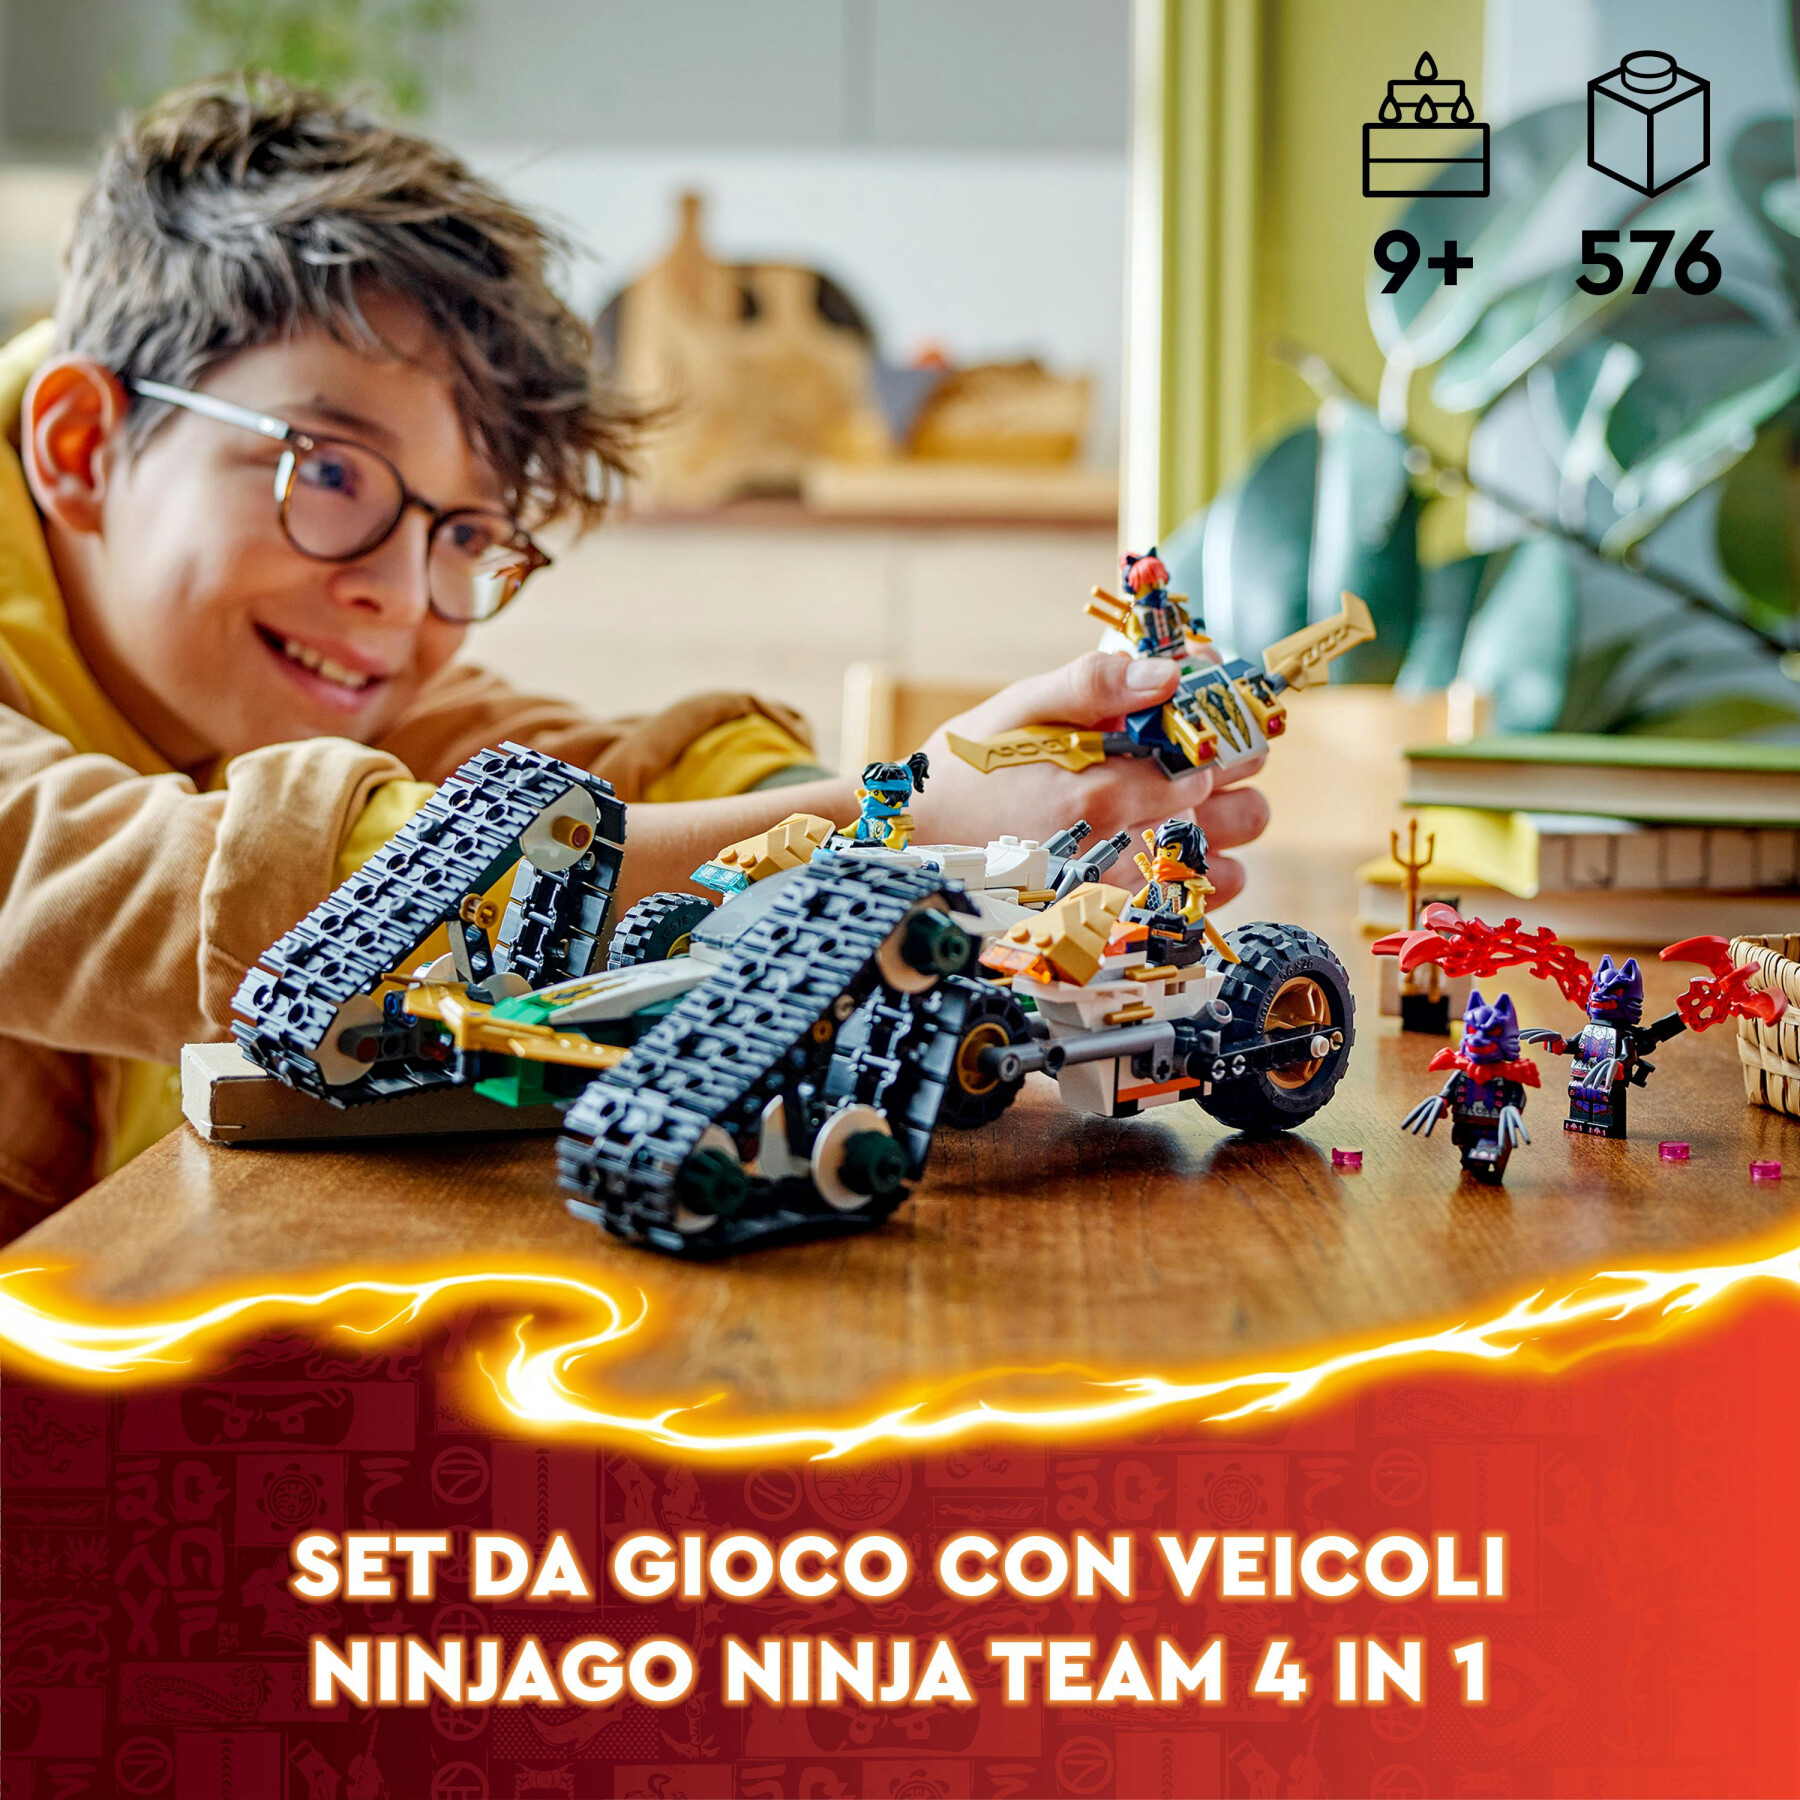 Lego ninjago 71820 ninja cingolato del team ninja, veicolo giocattolo 4 in 1, giochi d'avventura per bambini 9+, idea regalo - LEGO NINJAGO